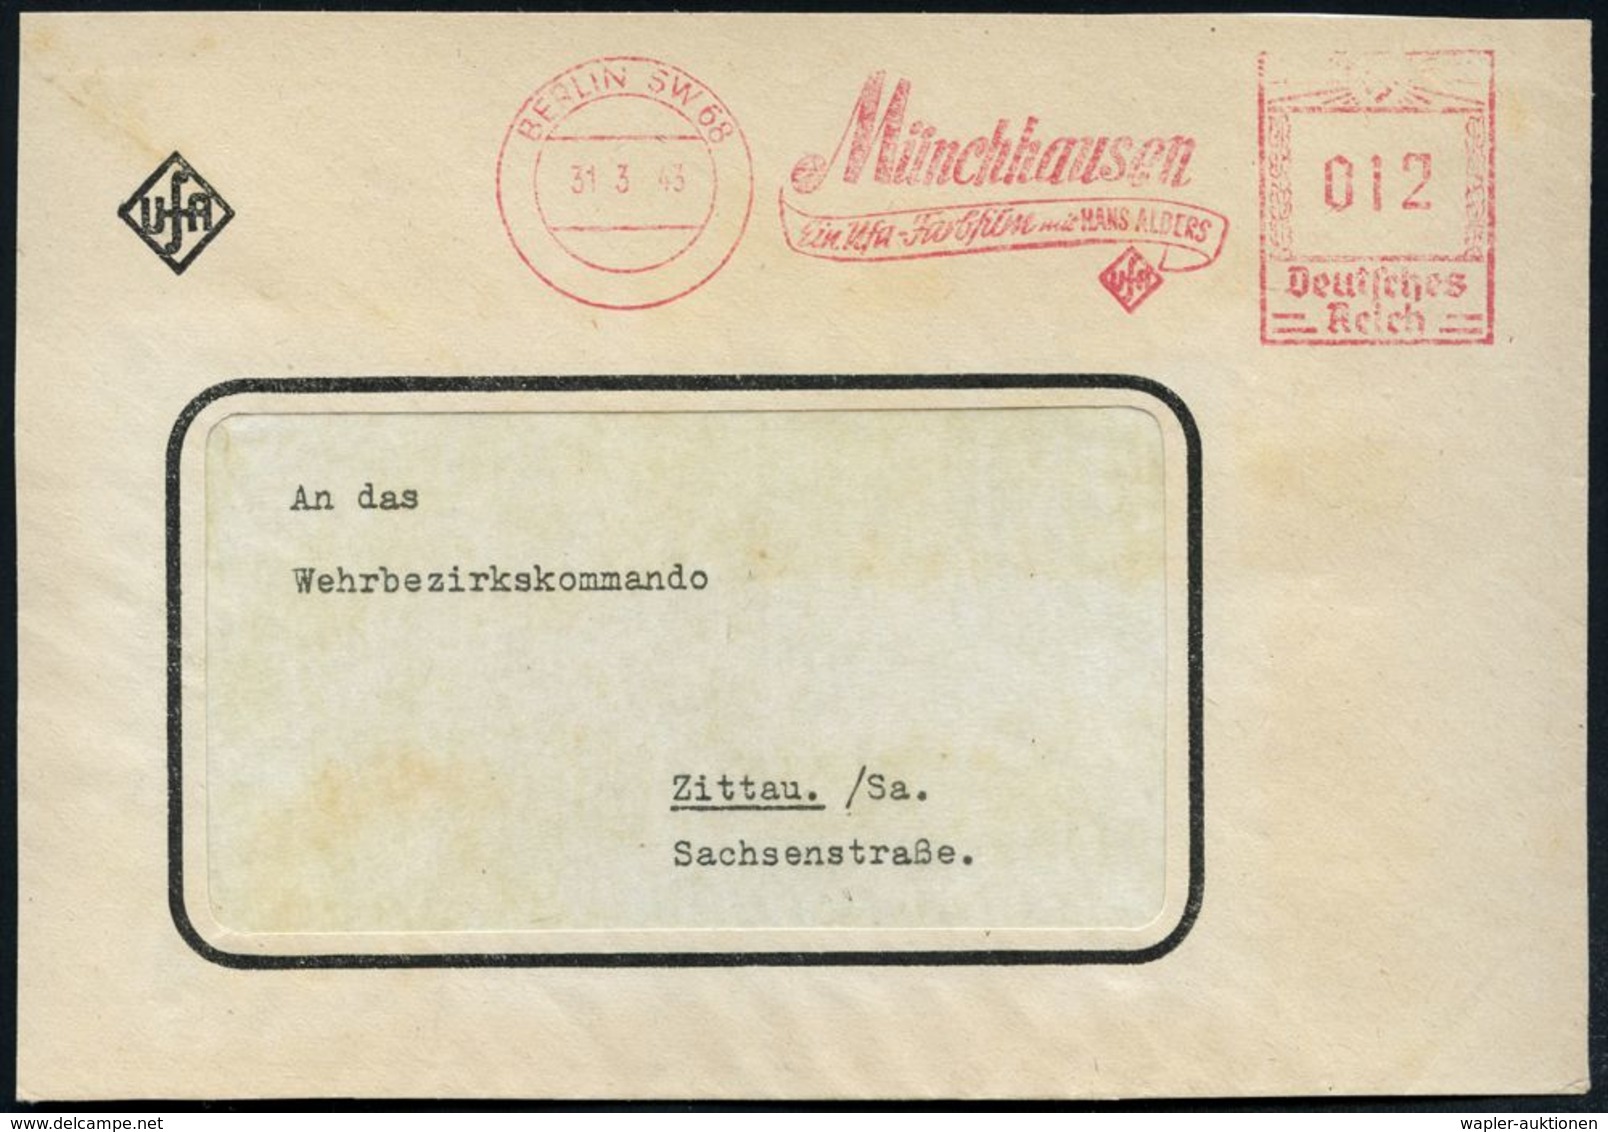 DEUTSCHSPRACHIGE DICHTER & LITERATUR : BERLIN SW 68/ Münchhausen/ Ein Ufa-Farbfilm Mit HANS ALBERS 1943 (31.3.) Sehr Sel - Writers